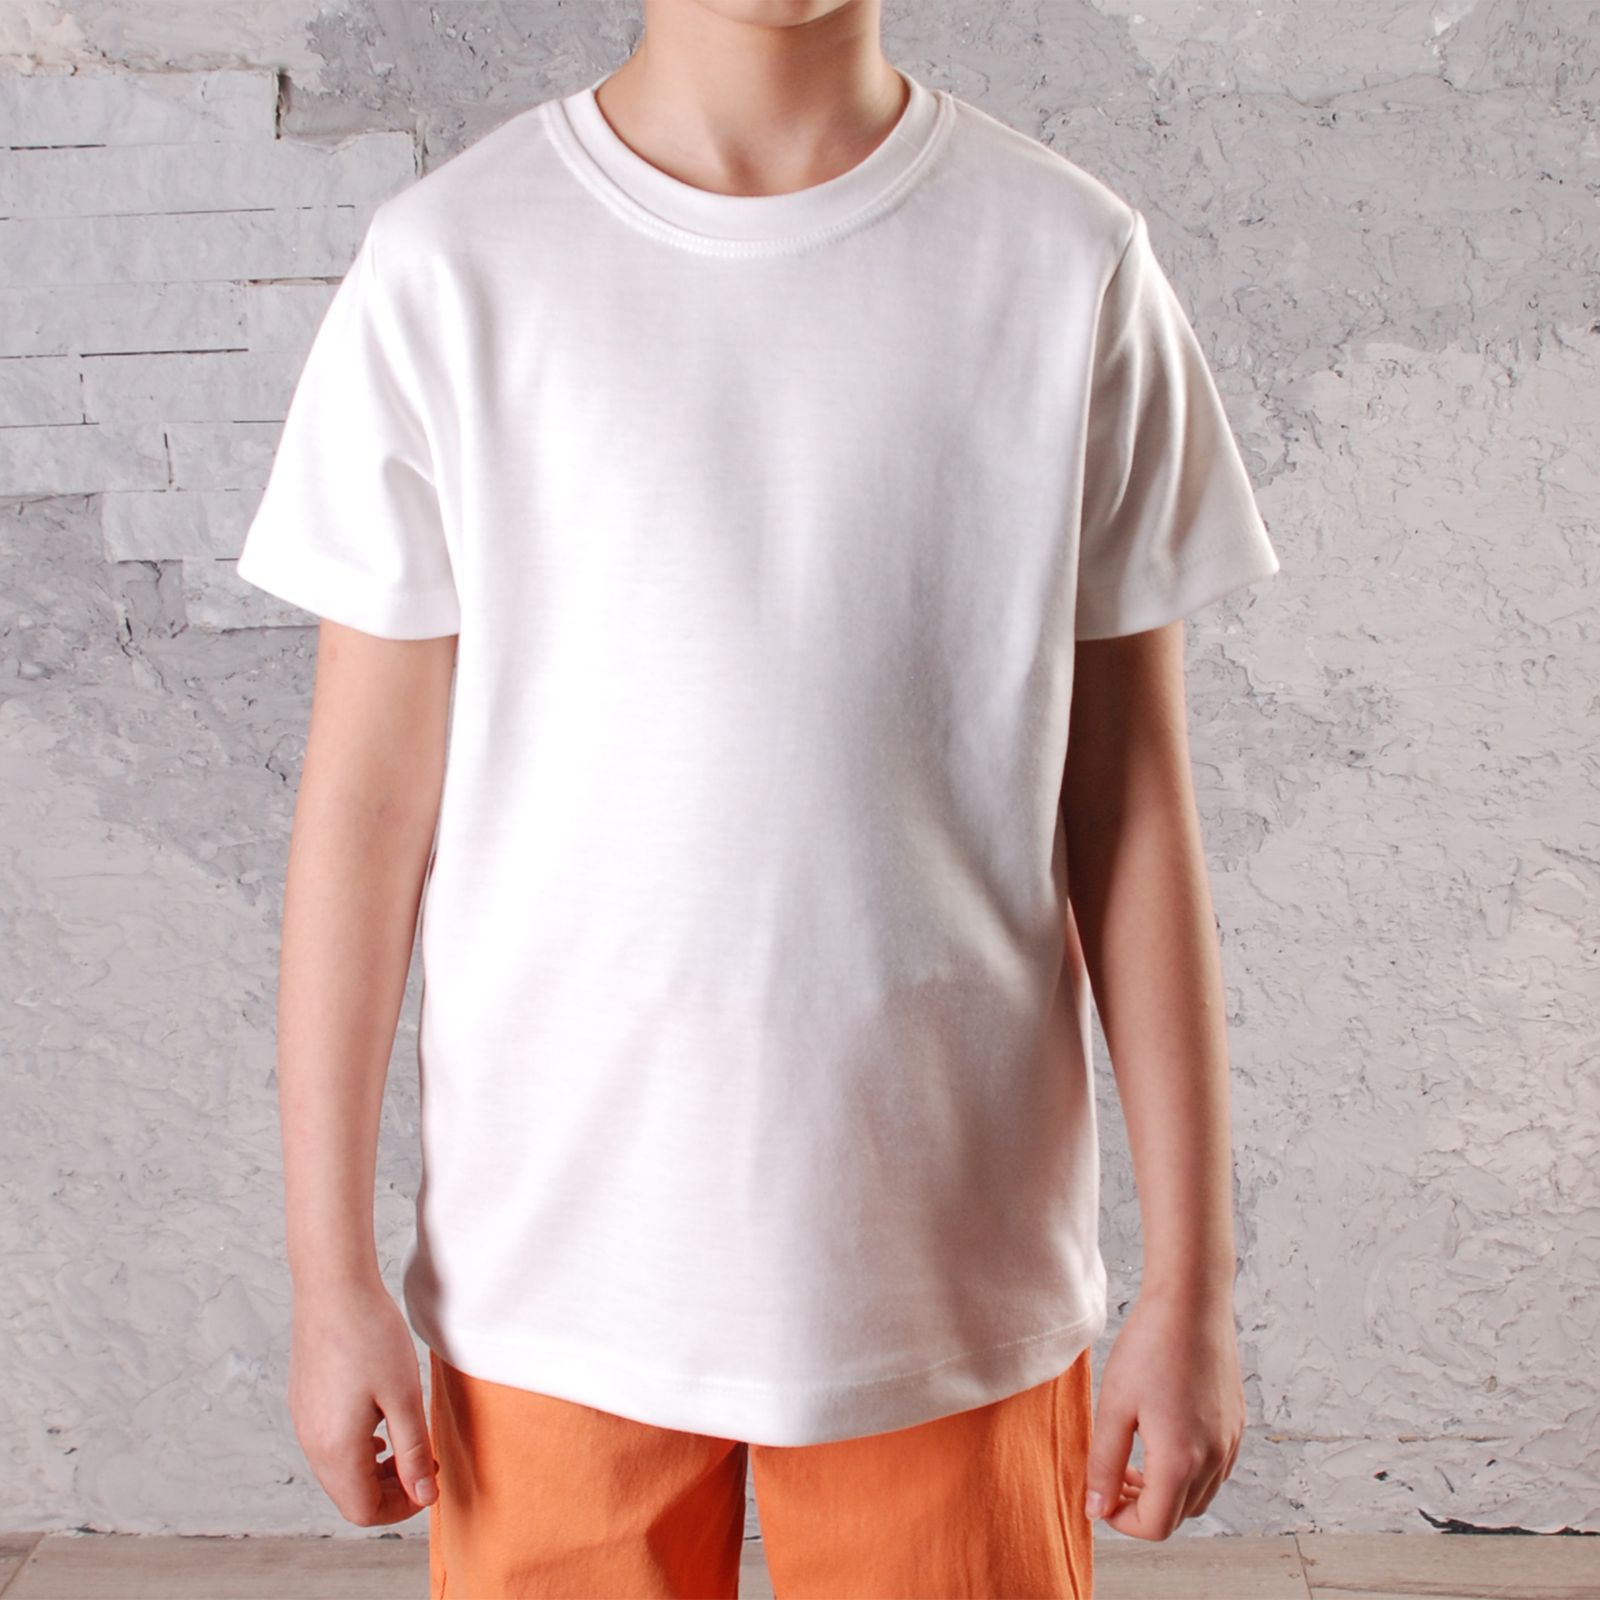 ست پیراهن و تی شرت پسرانه قرآنی مدل 211604ORG -  - 6